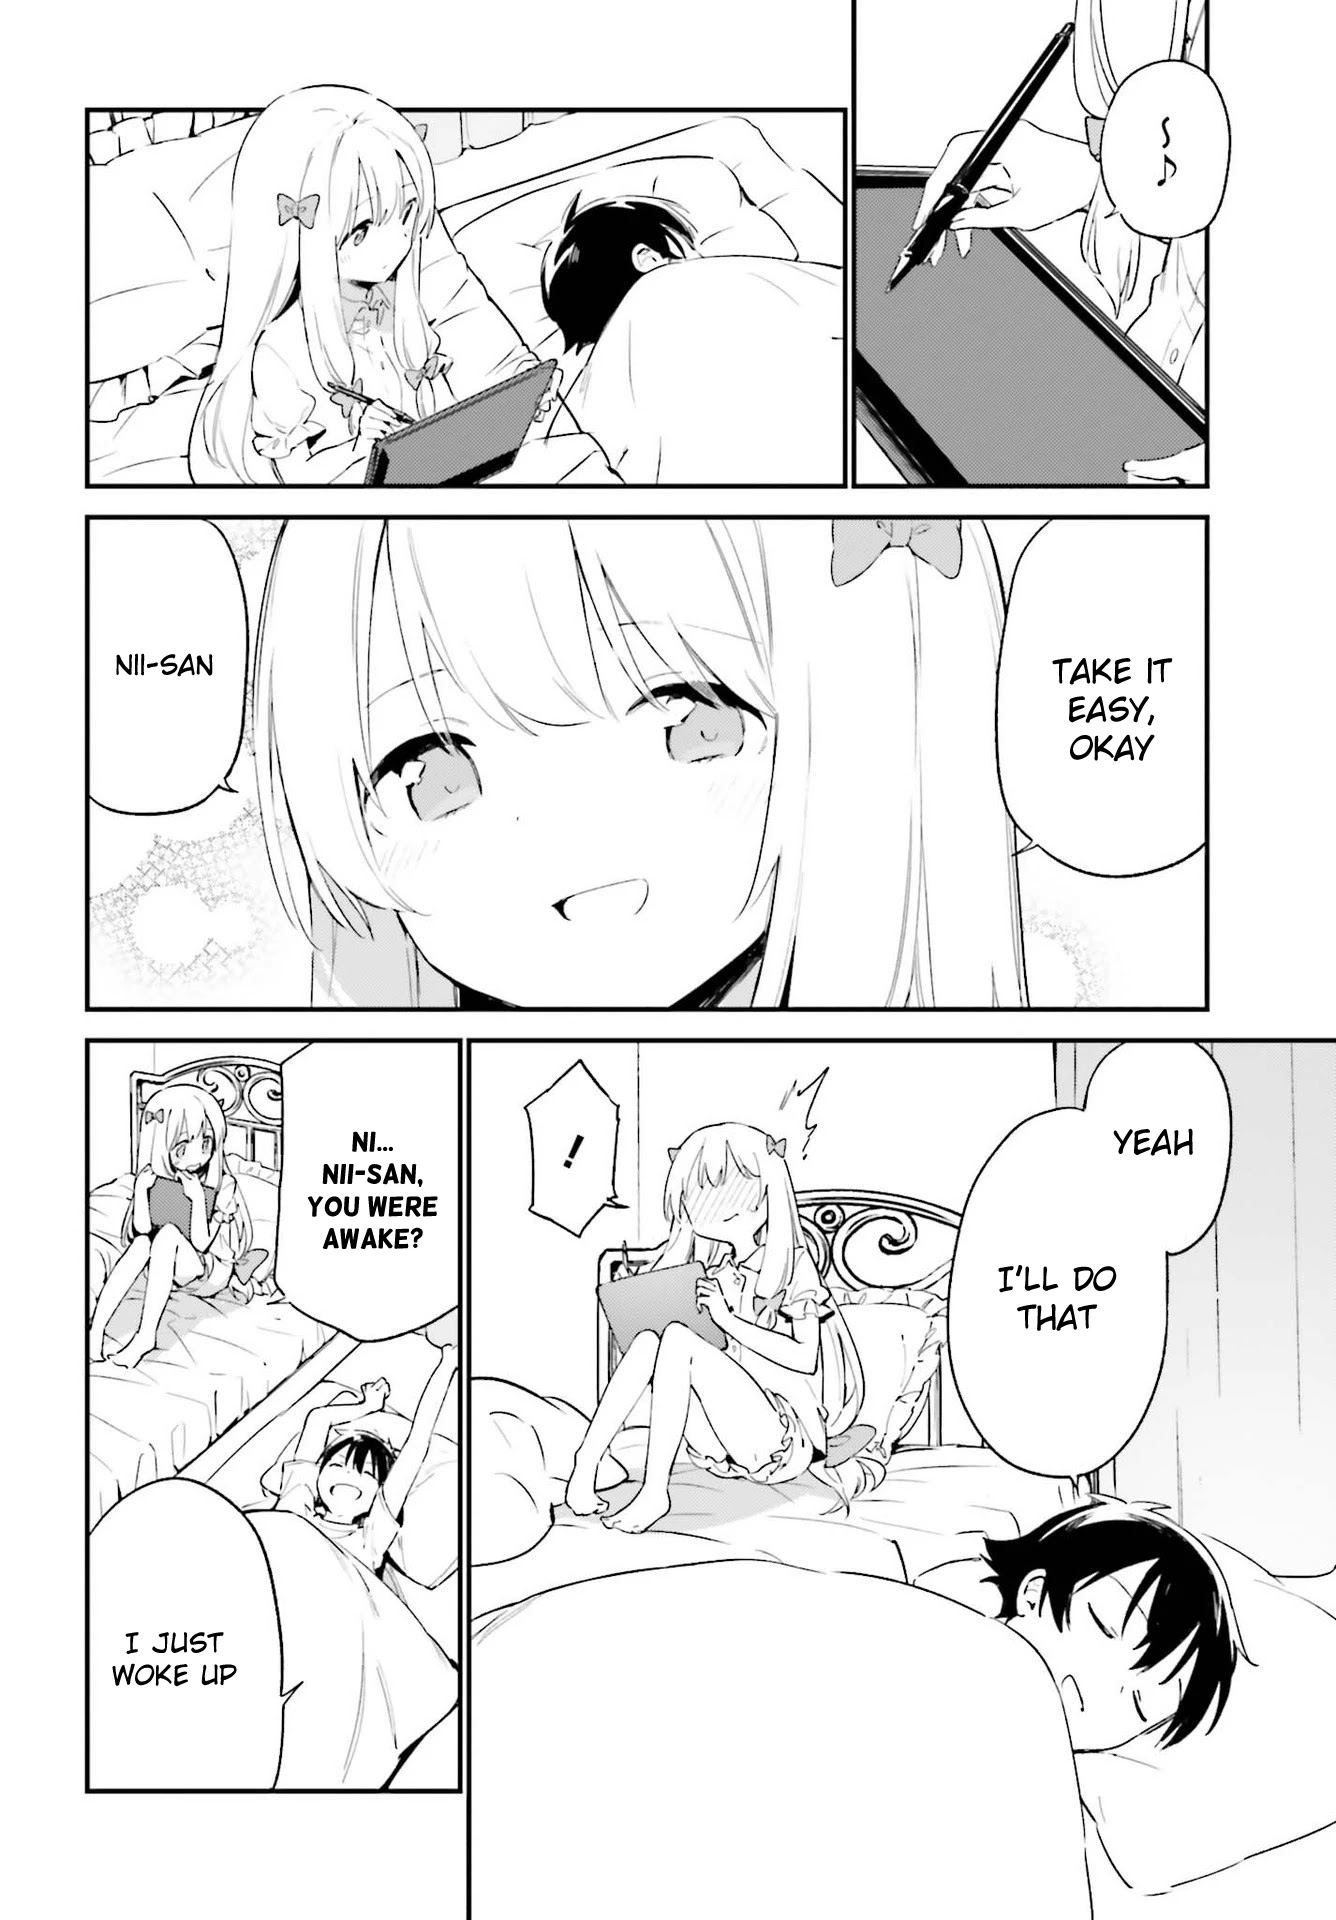 Ero Manga Sensei - 77 page 4-23388ab2